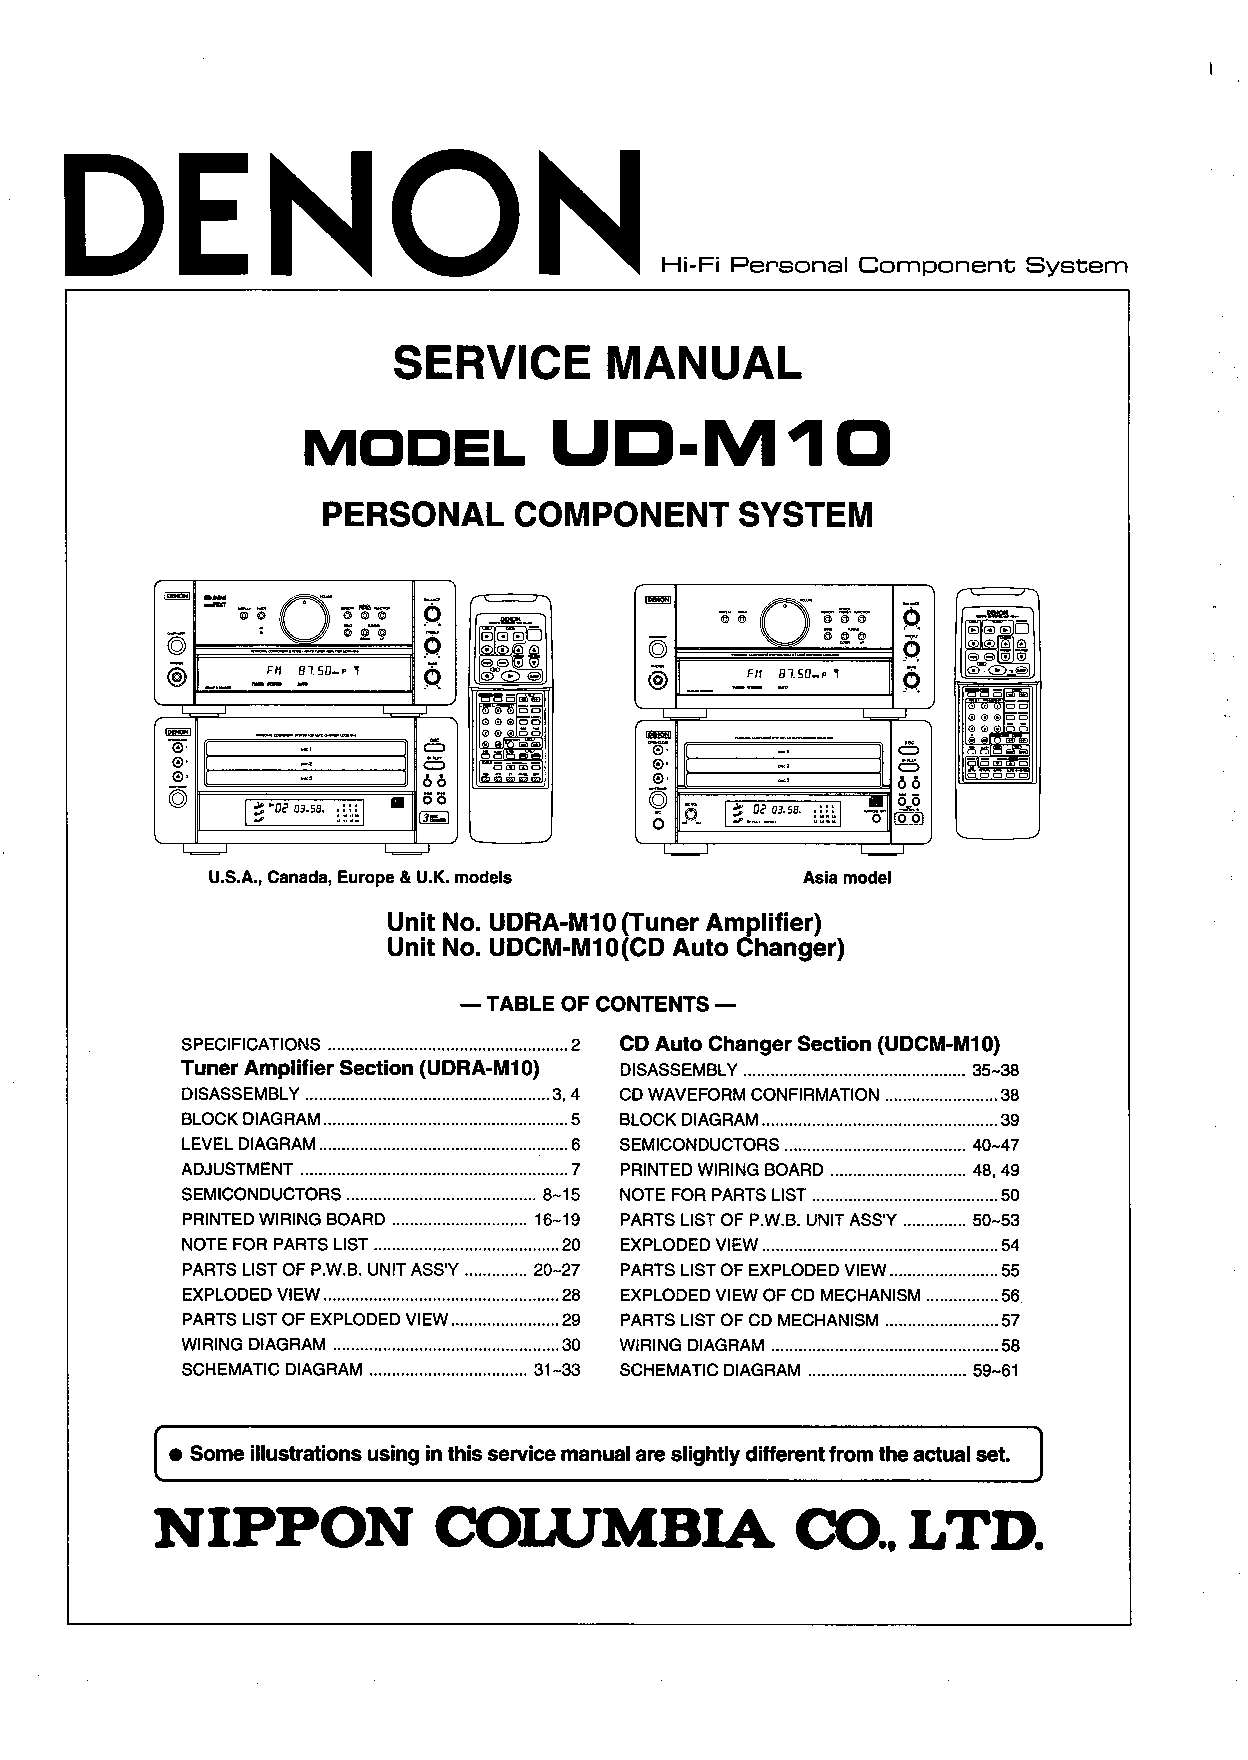 Denon UD-M10 Service Manual